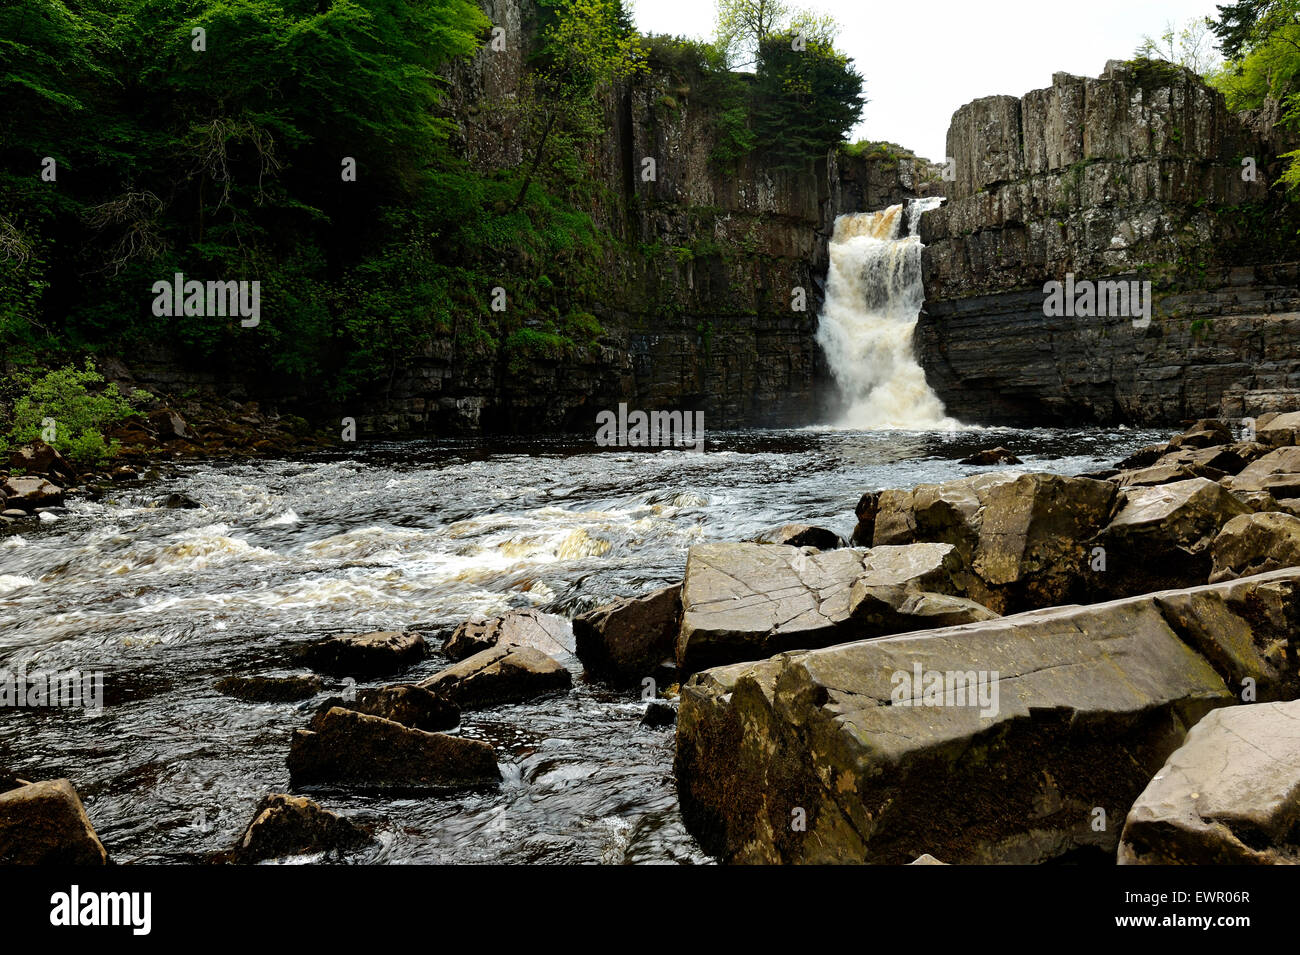 High Force Waterfall, Durham, UK Stock Photo